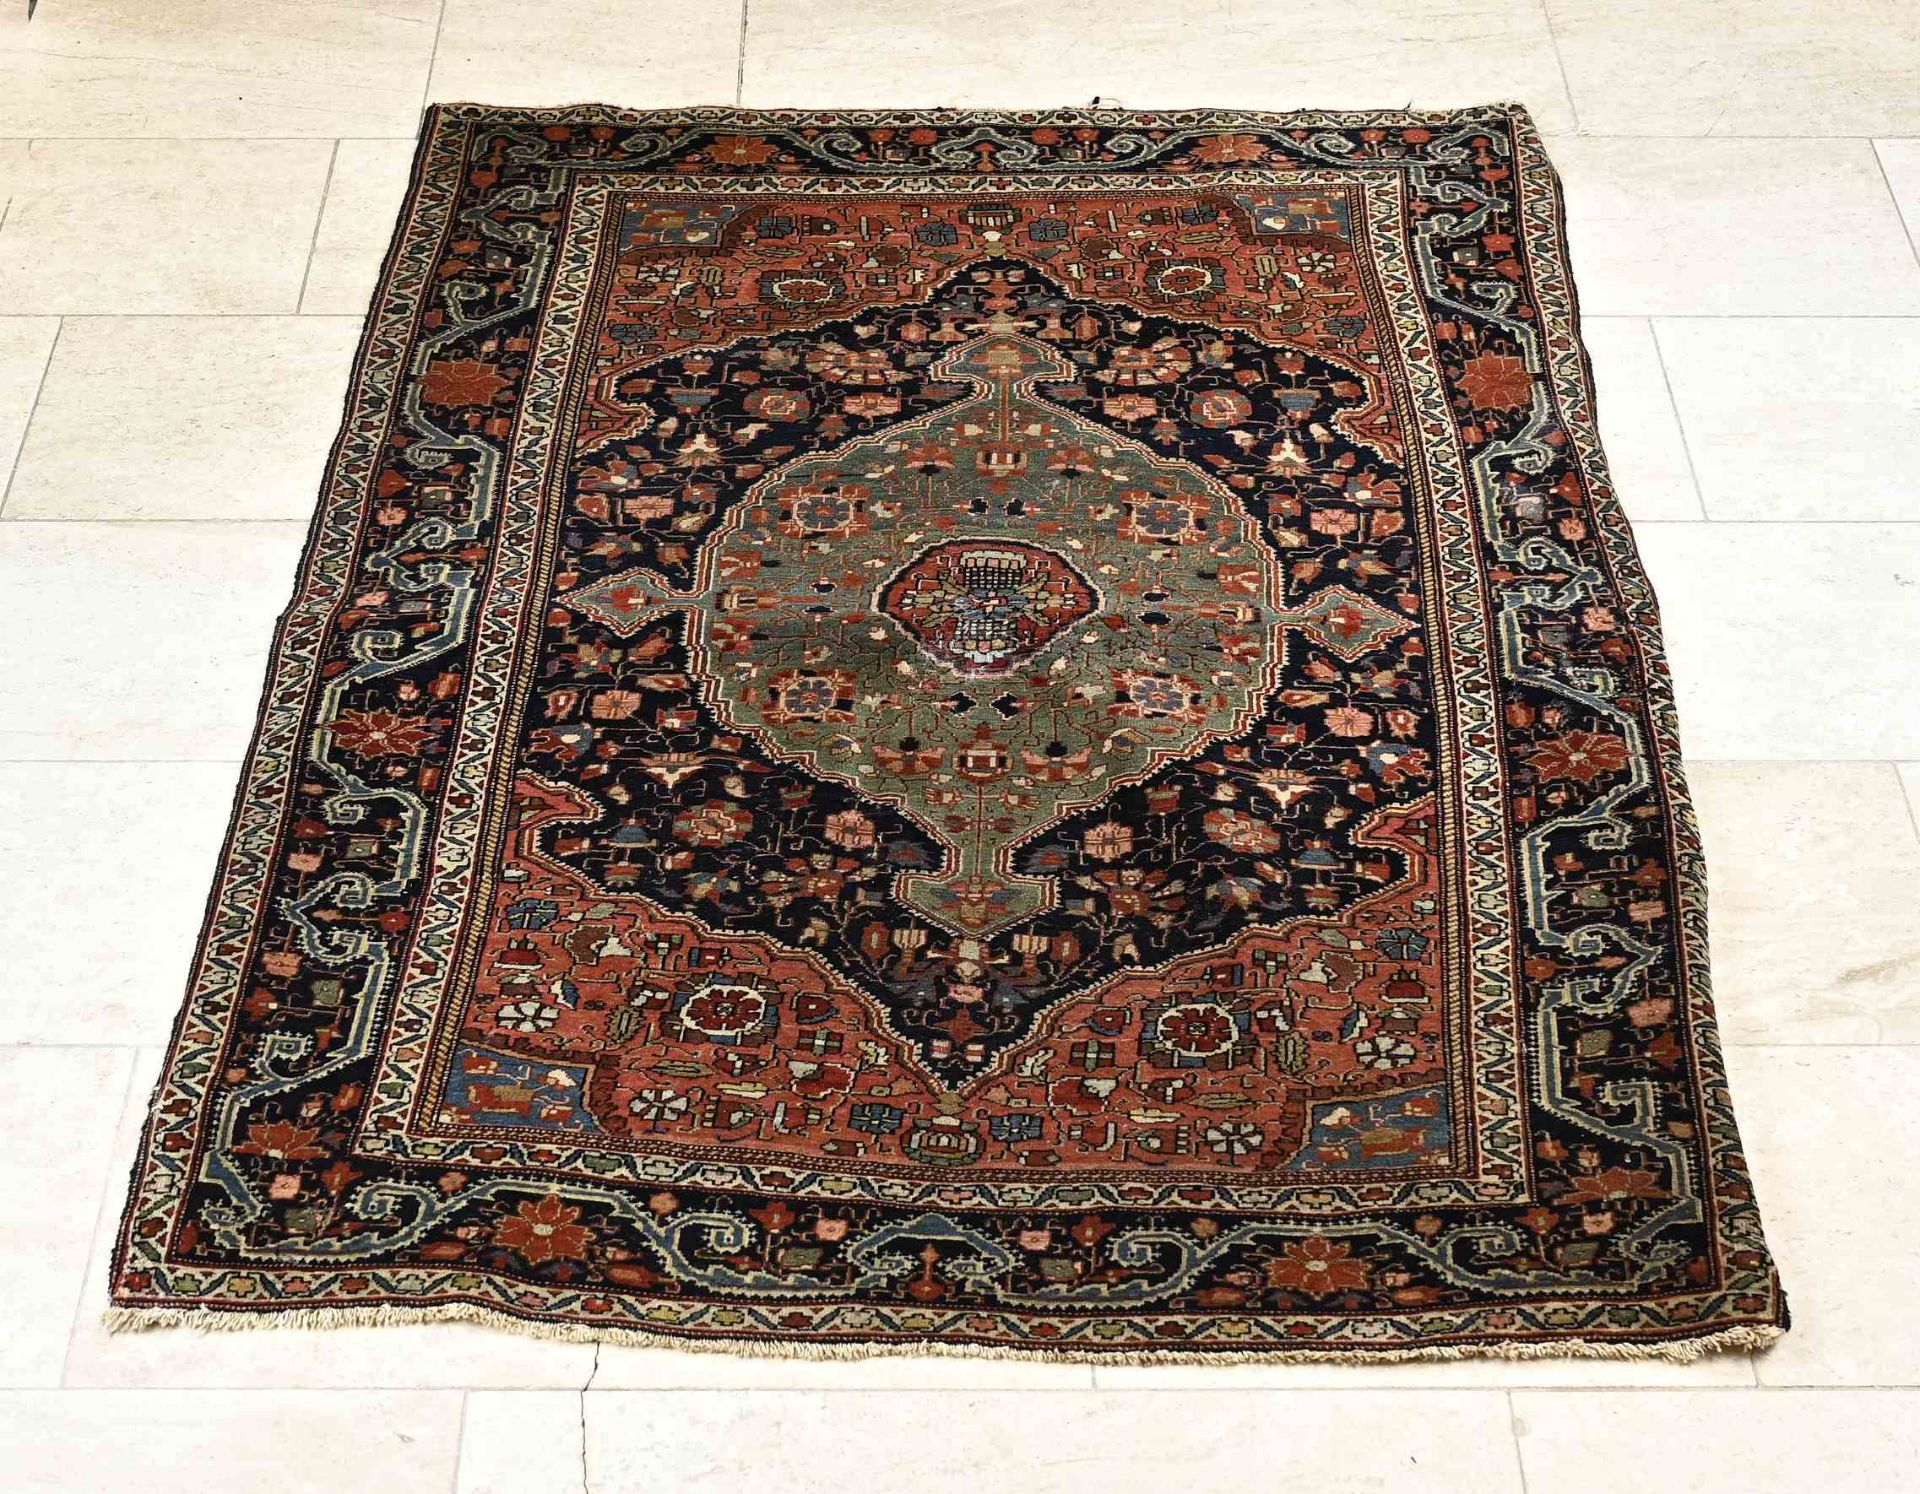 Persian rug, 155 x 110 cm.